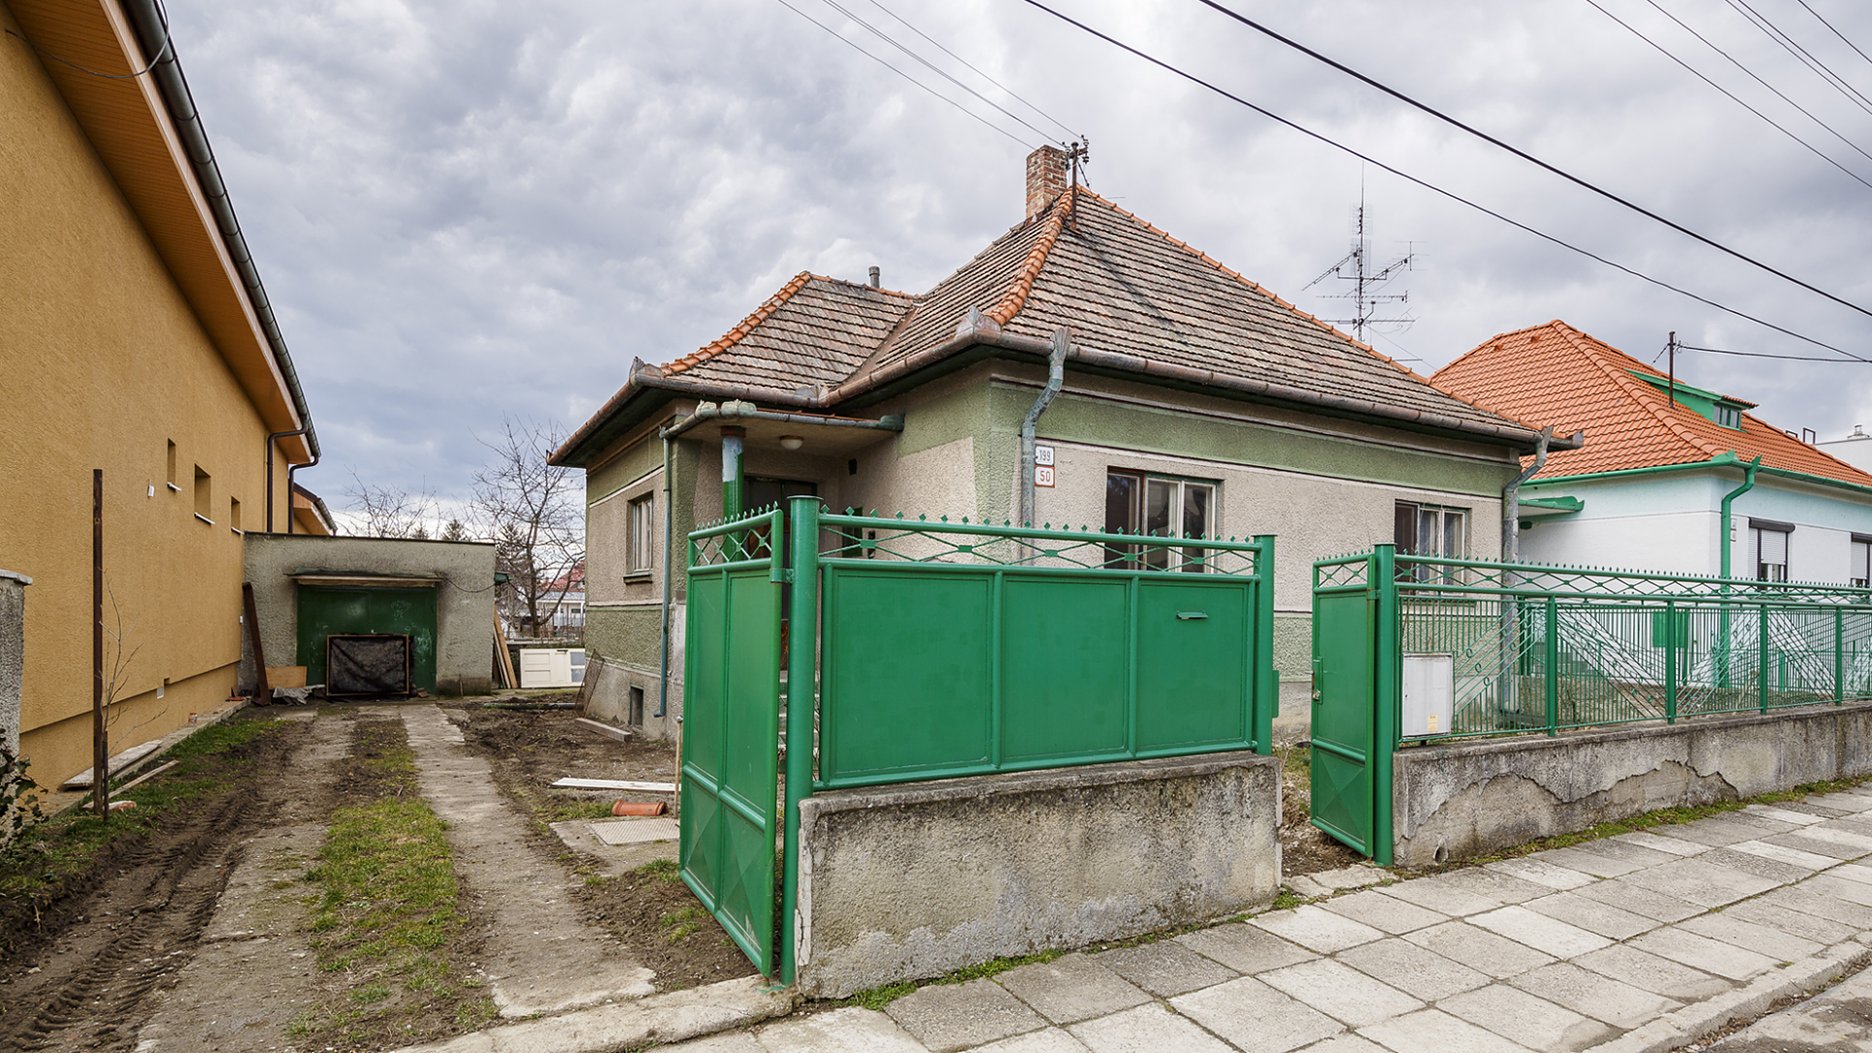 Dom, v akom bývajú Hučkovci, nájdete v každej slovenskej obci, zväčša v pôvodnom stave.